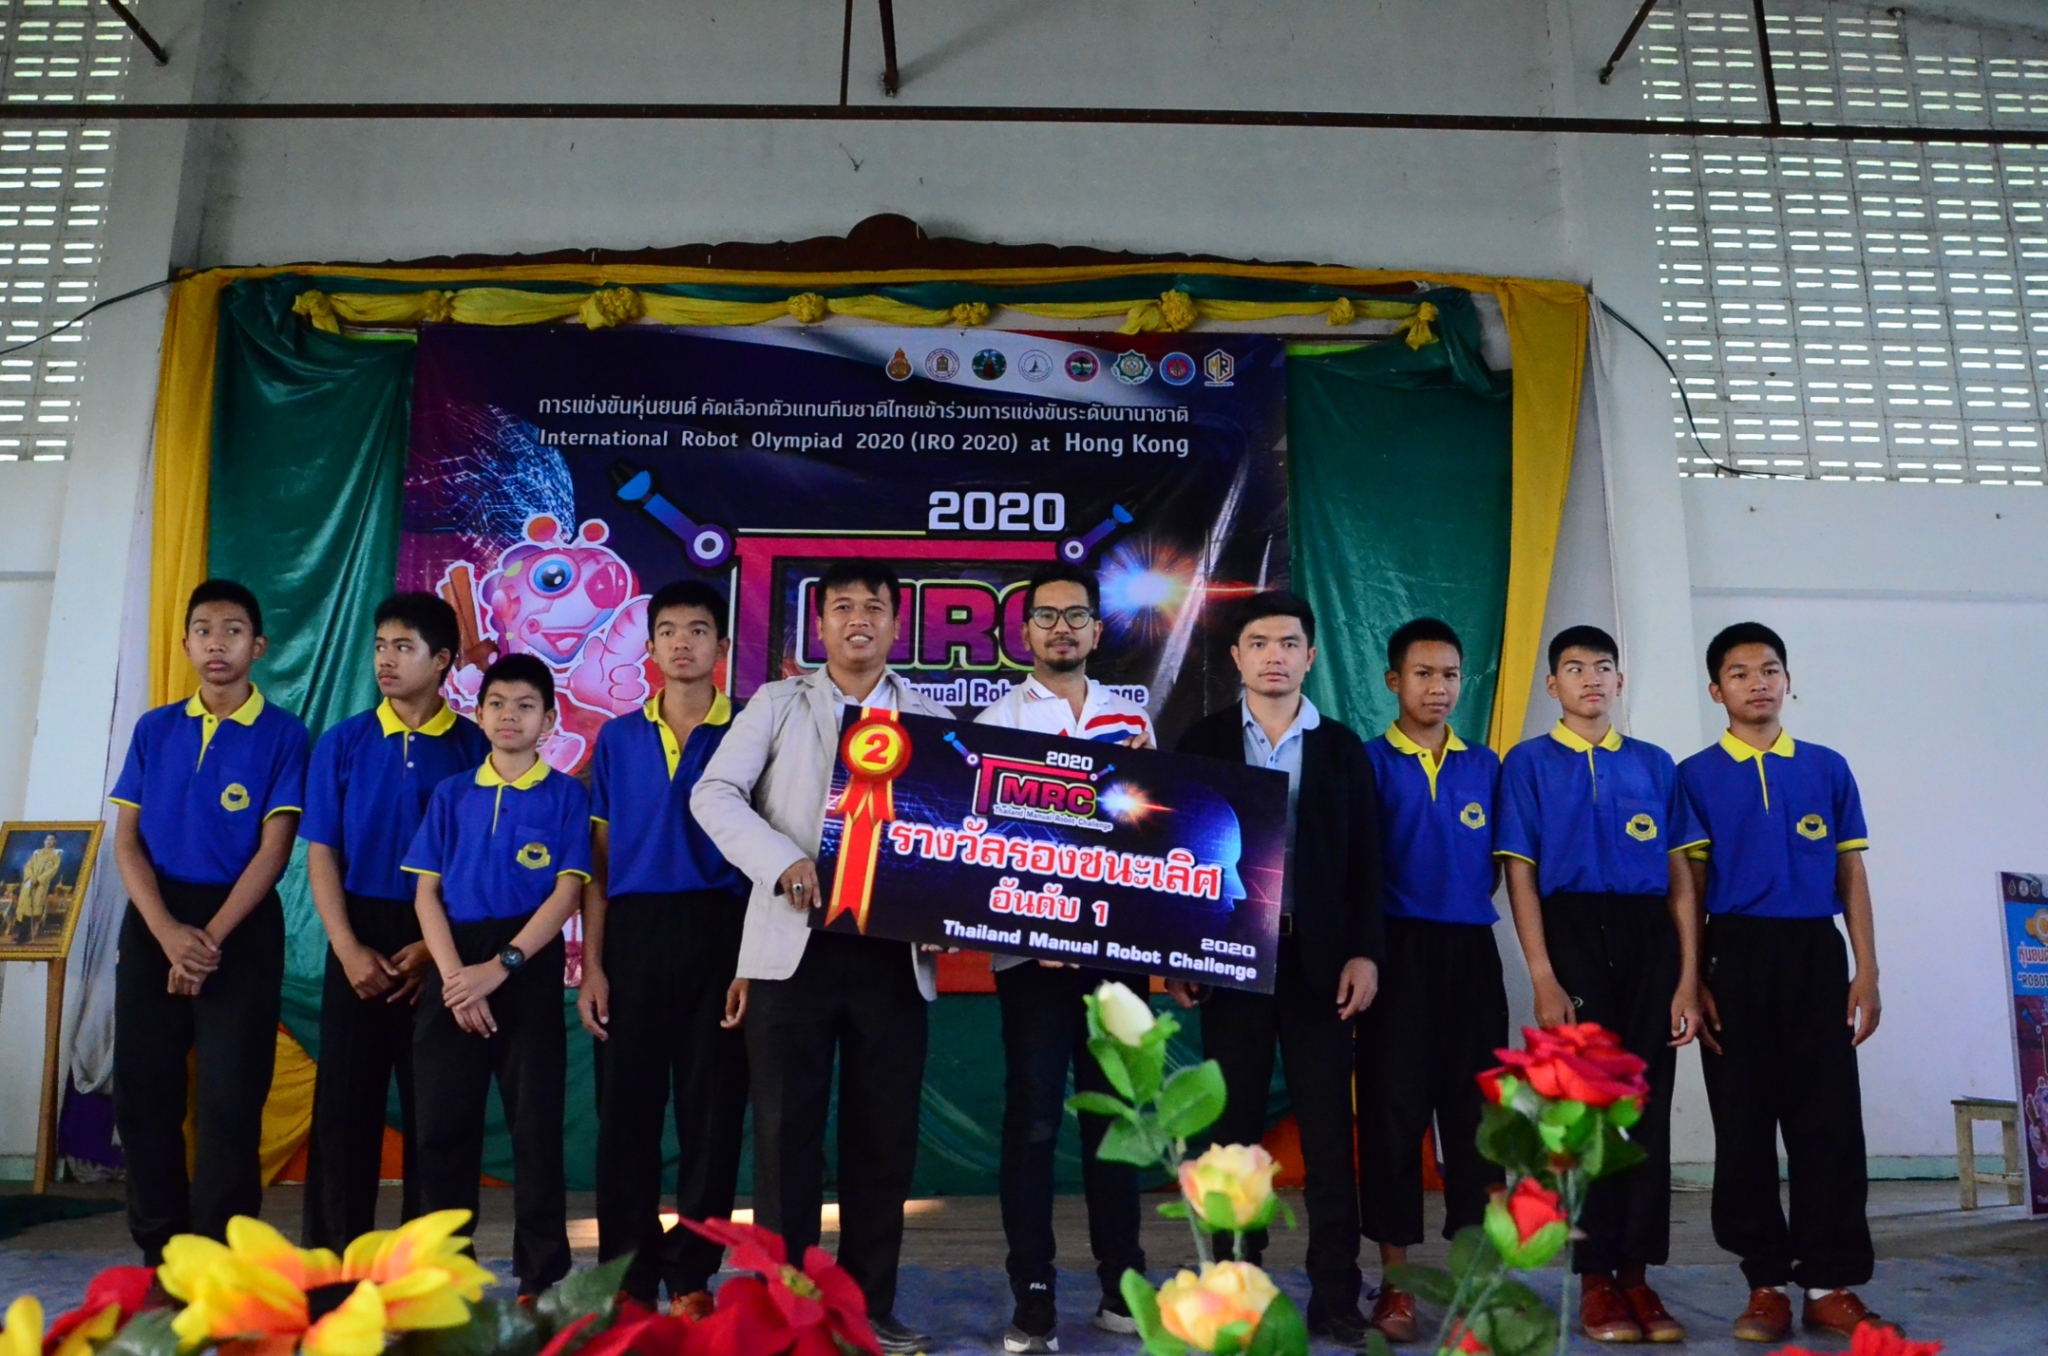 ได้รับรางวัลรองชนะเลิศการแข่งขันเตะจุดโทษ ระดับมัธยมศึกษาตอนต้น การแข่งขันหุ่นยนต์ คัดเลือกตัวแทนทีมชาติไทยเข้าร่วมการแข่งขันระดับชาติ International Robot Olympiad 2020(IRO 2020) at Hong Kong และได้เป็นตัวแทนทีมชาติไทย